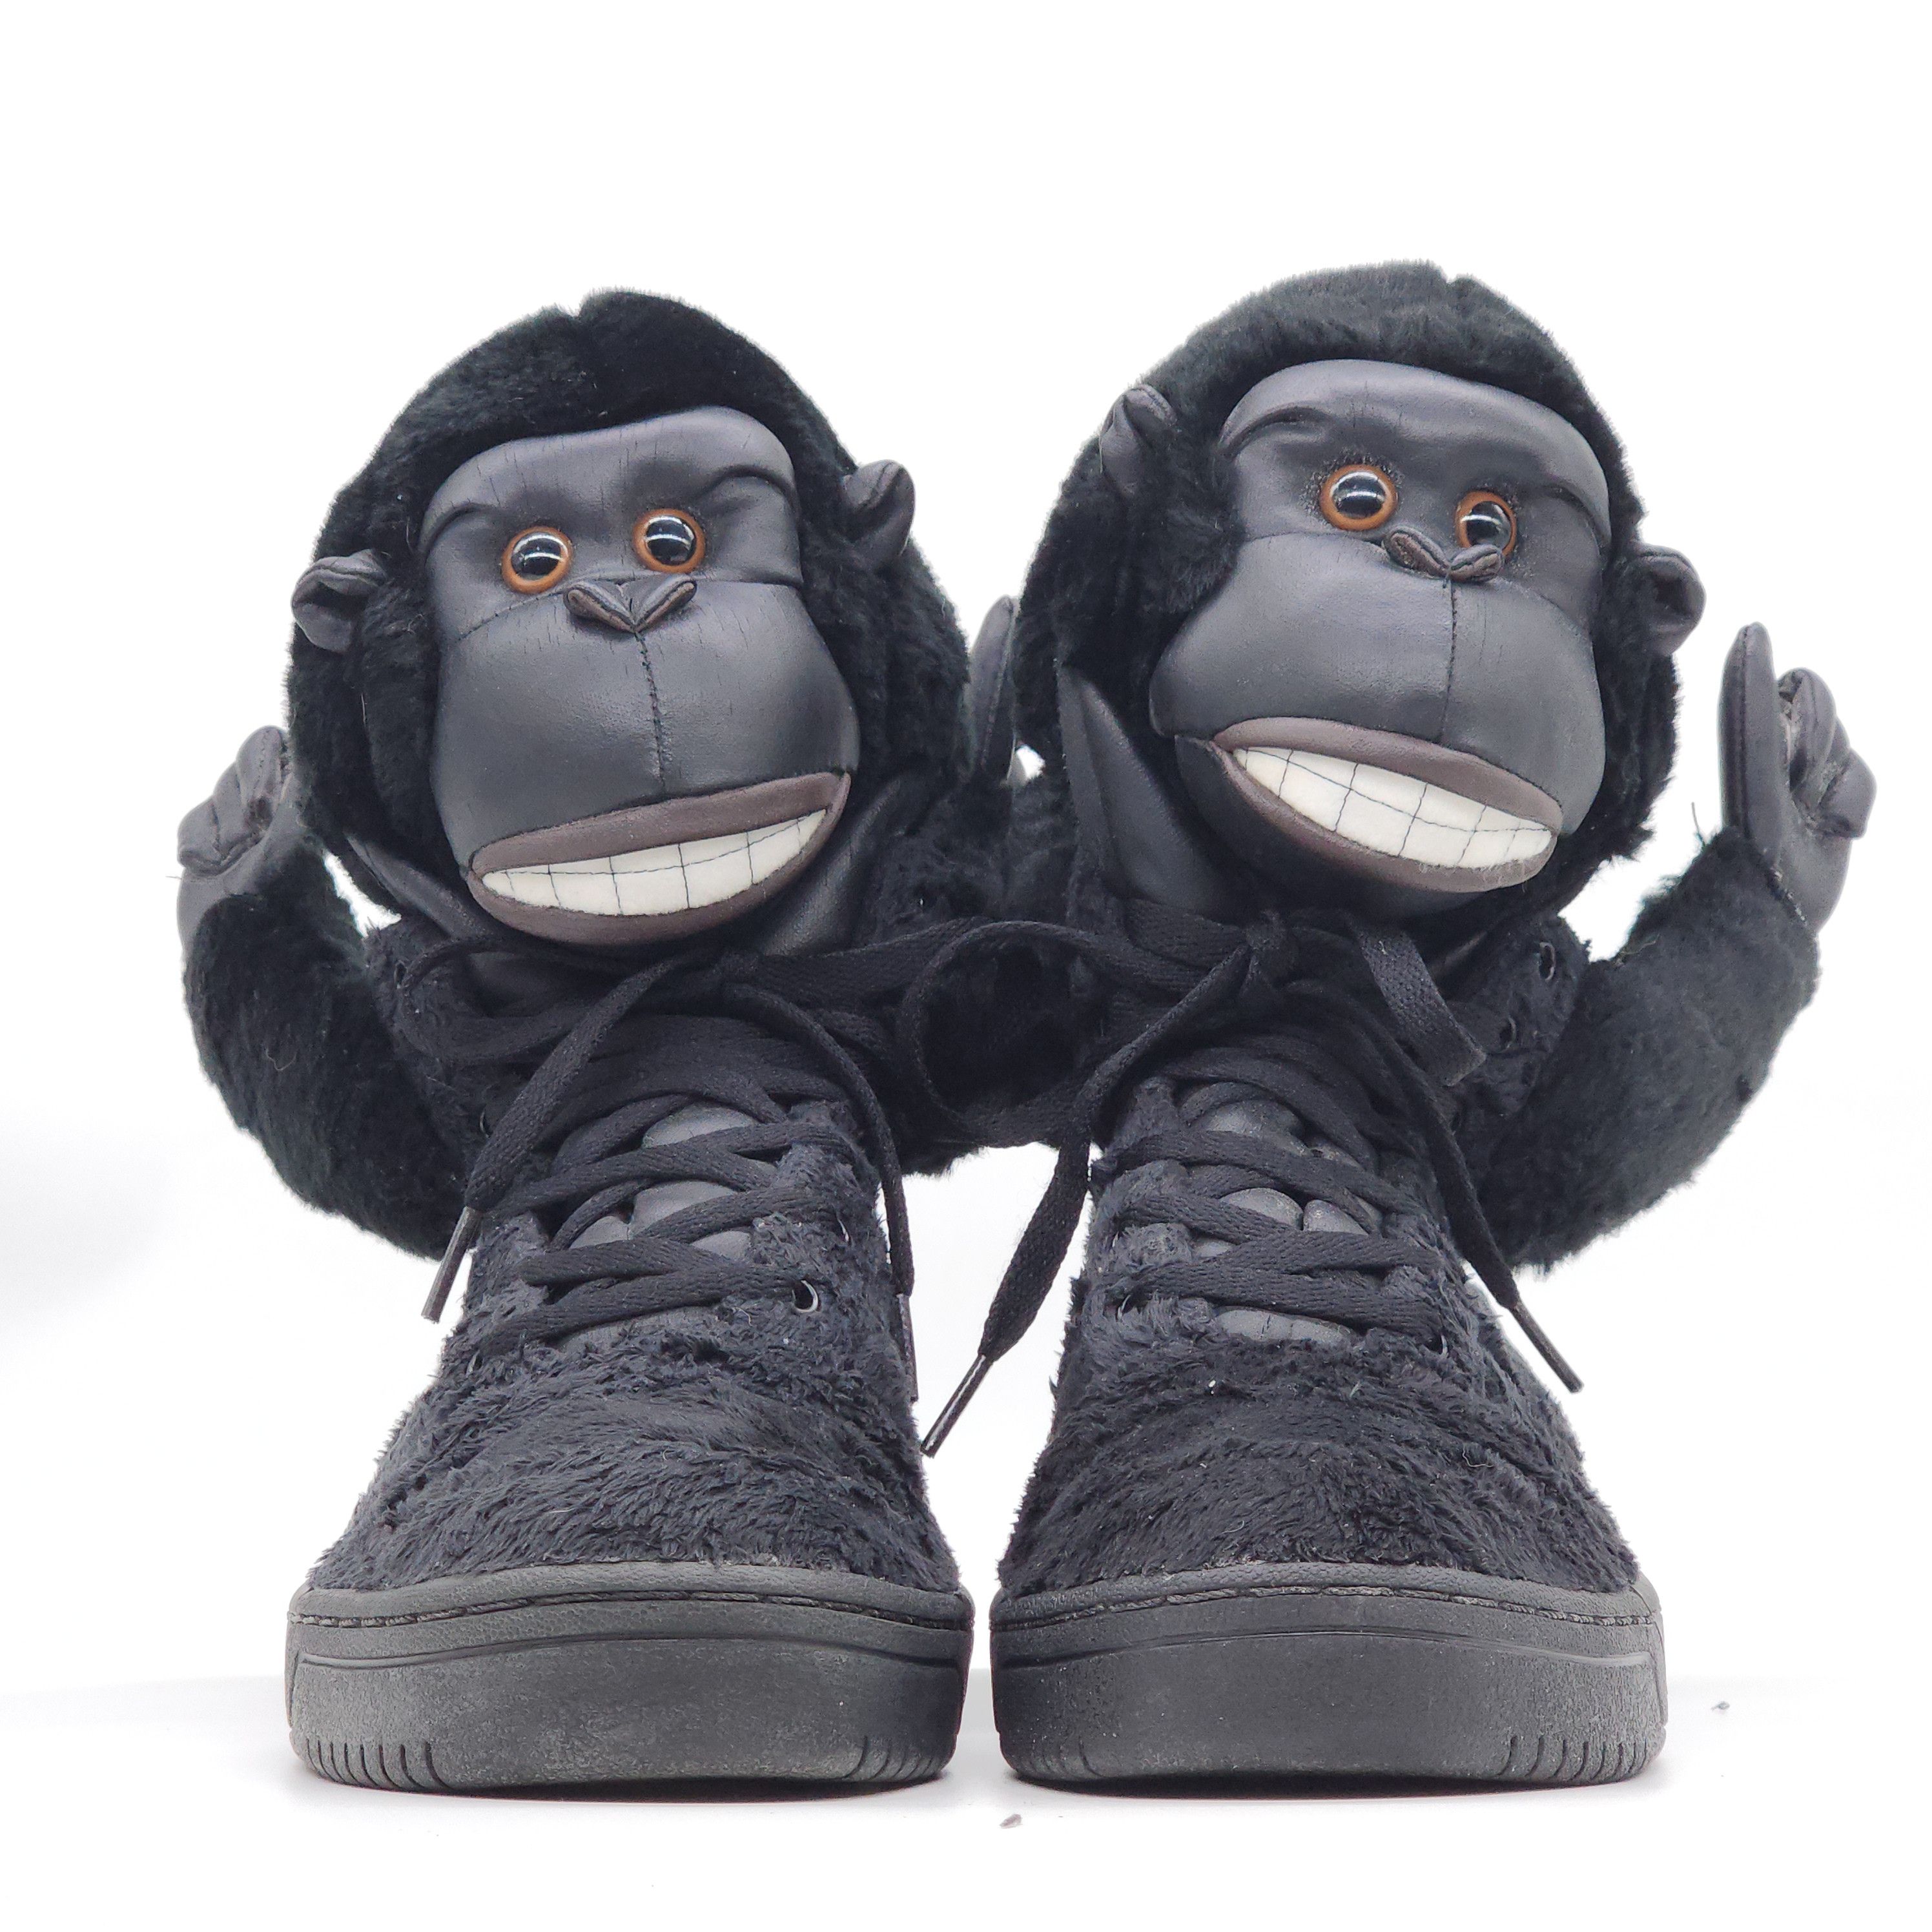 Adidas x Jeremy Scott - Gorilla Sneakers "2 Chainz" - 3